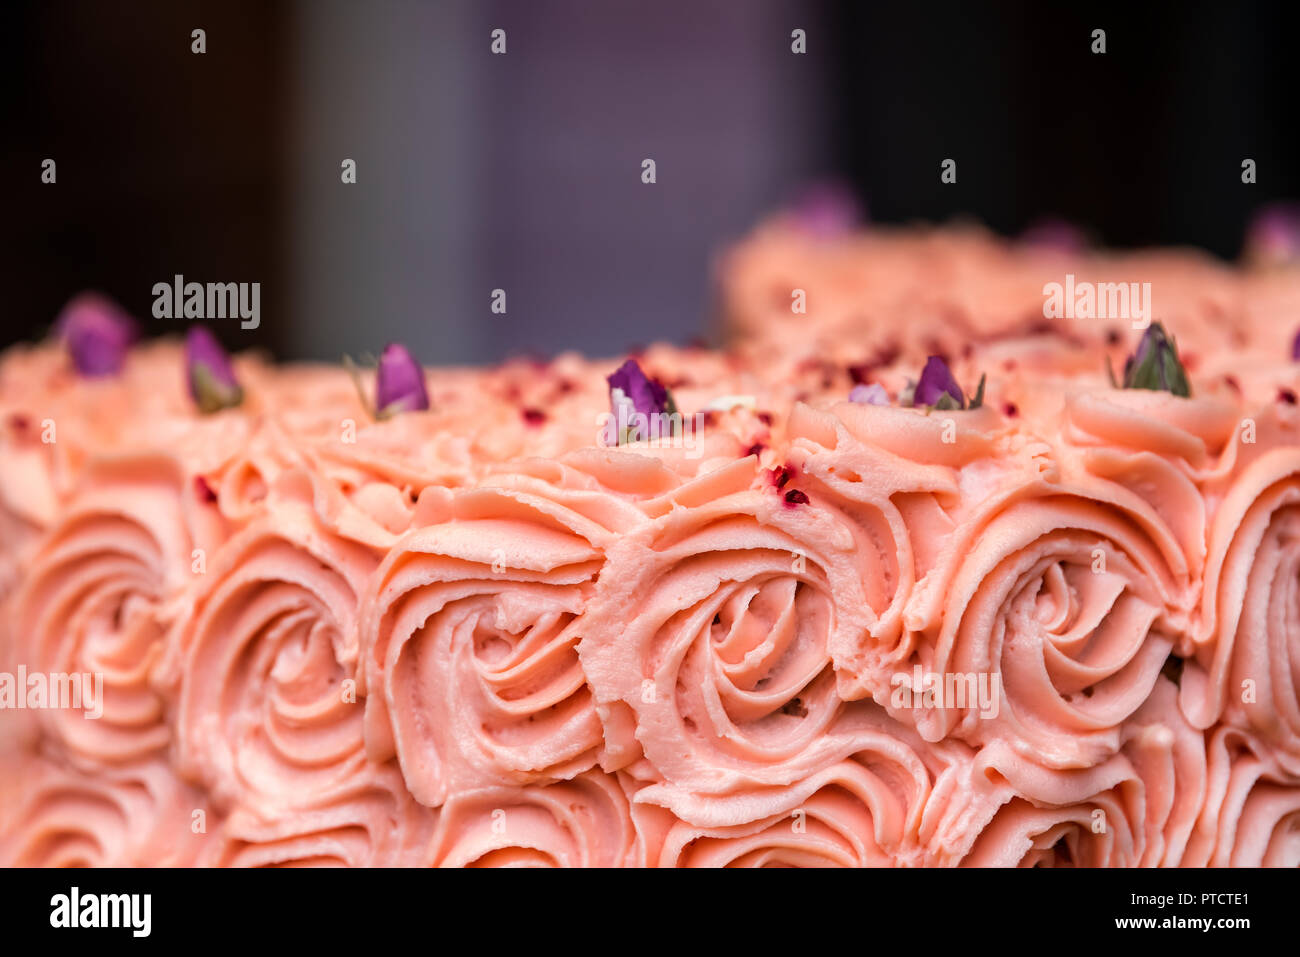 Makro Nahaufnahme von rosa rote Rose kuchen Blumendekorationen von Zuckerguss in Bäckerei store Shop Anzeige, Lila trocken Blütenblätter, köstliche Creme Stockfoto